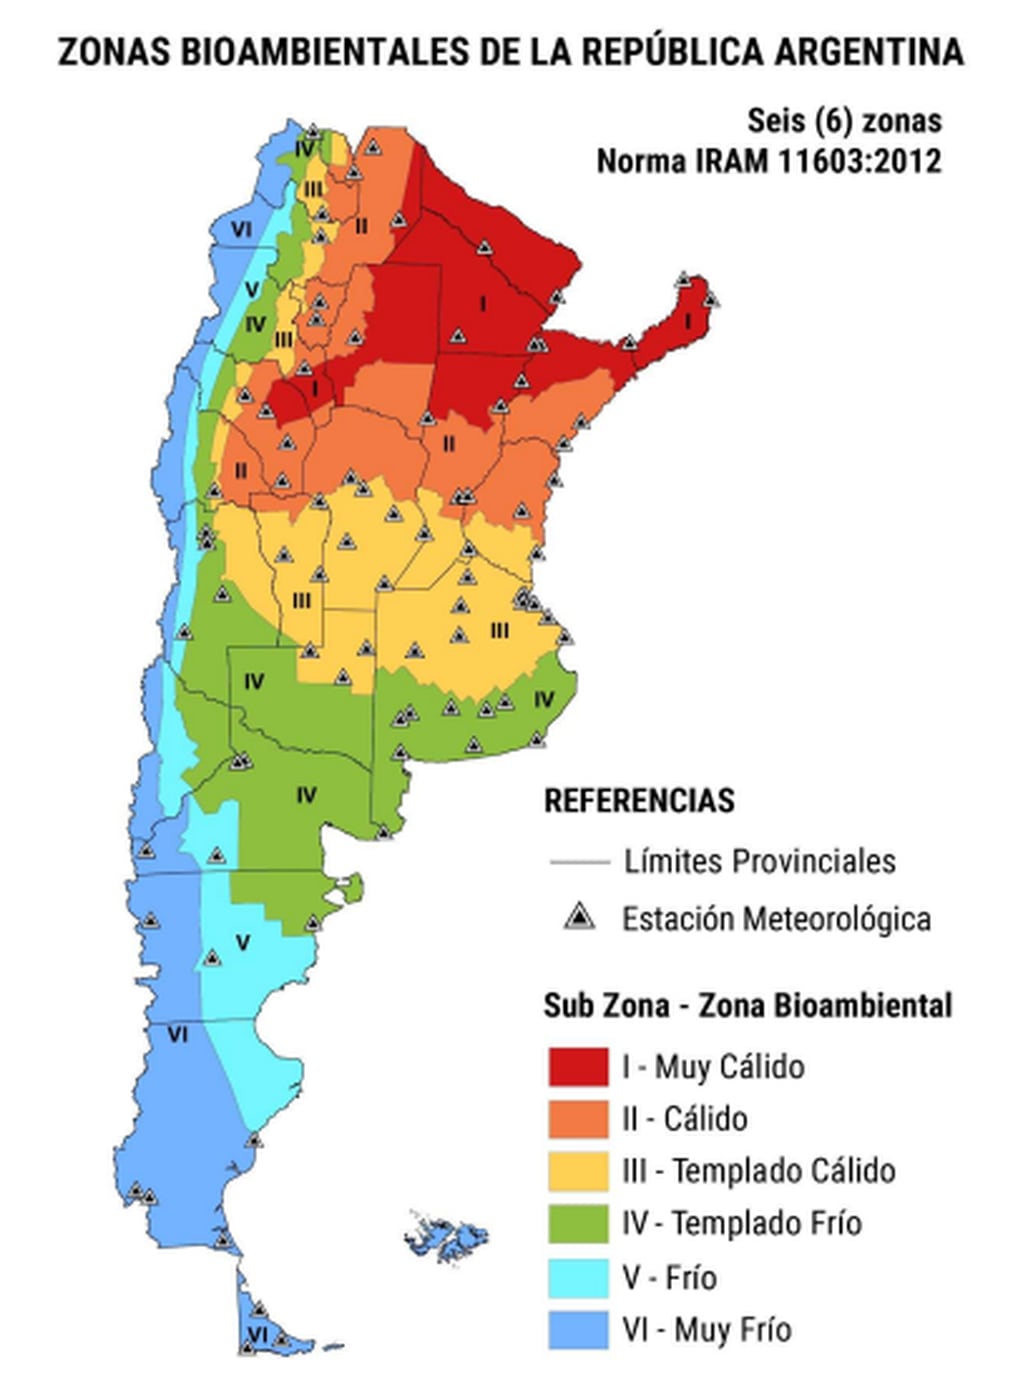 Mapa de las zonas bioambientales en la Argentina, según Normas IRAM